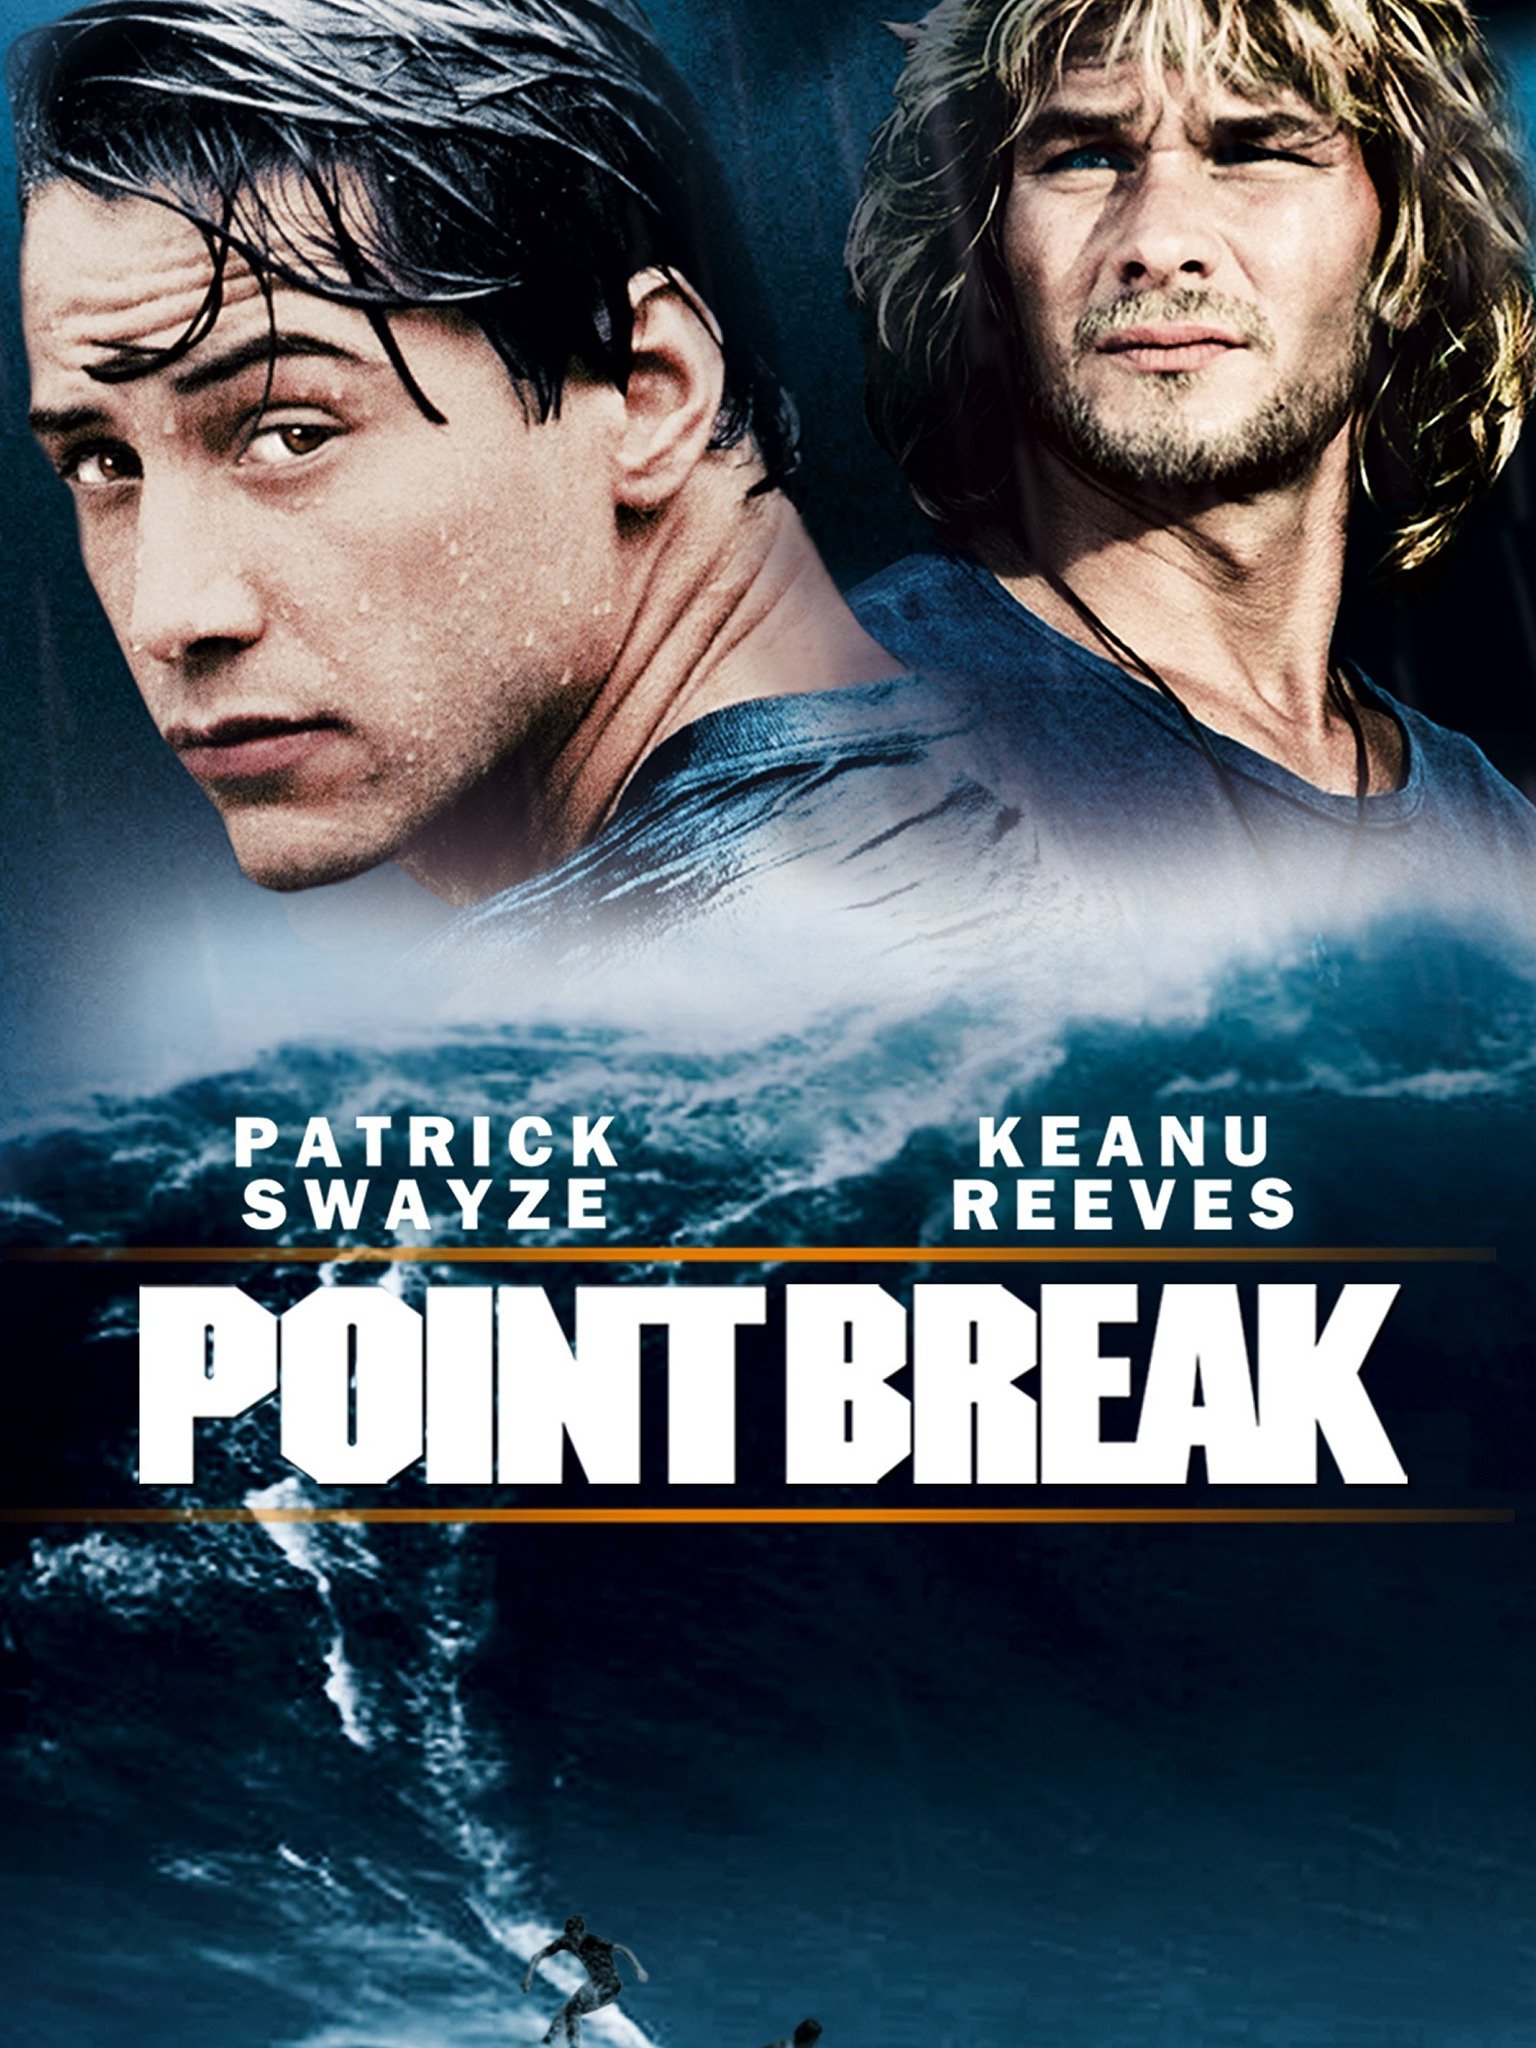 trailer for point break 2015